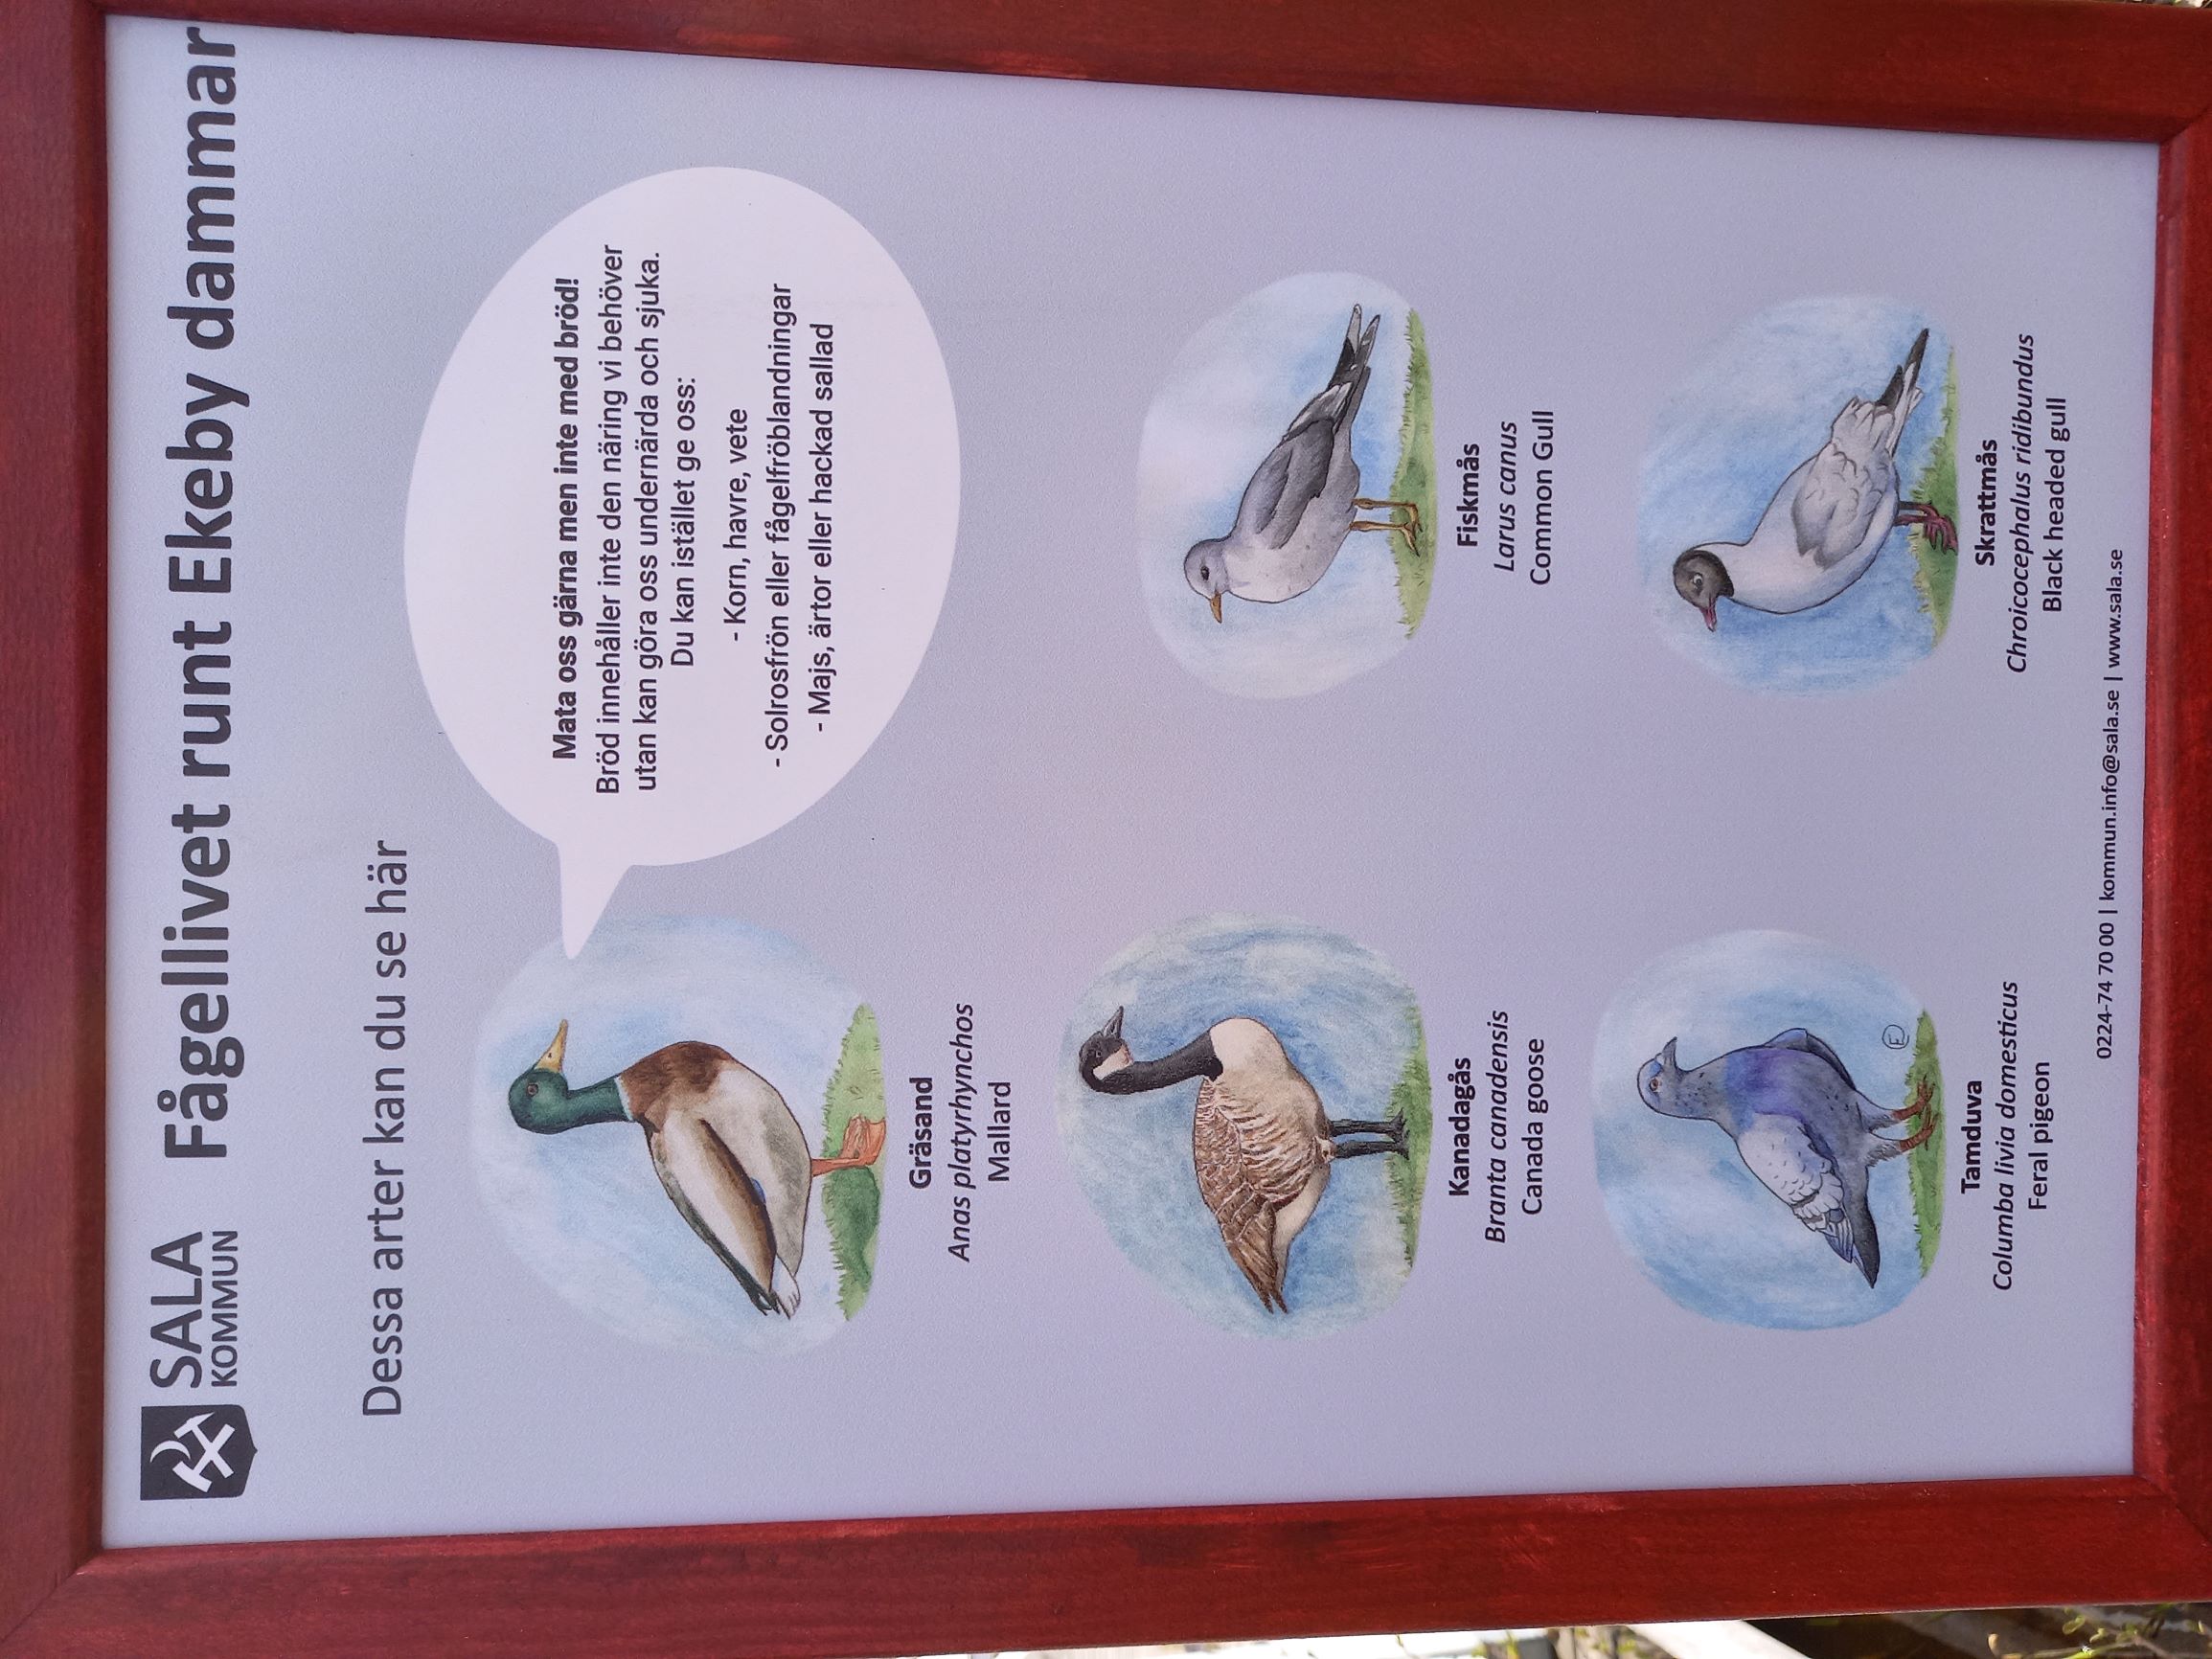 Skylt med illustrationer av fåglar och information om vad du kan mata fåglarna med.